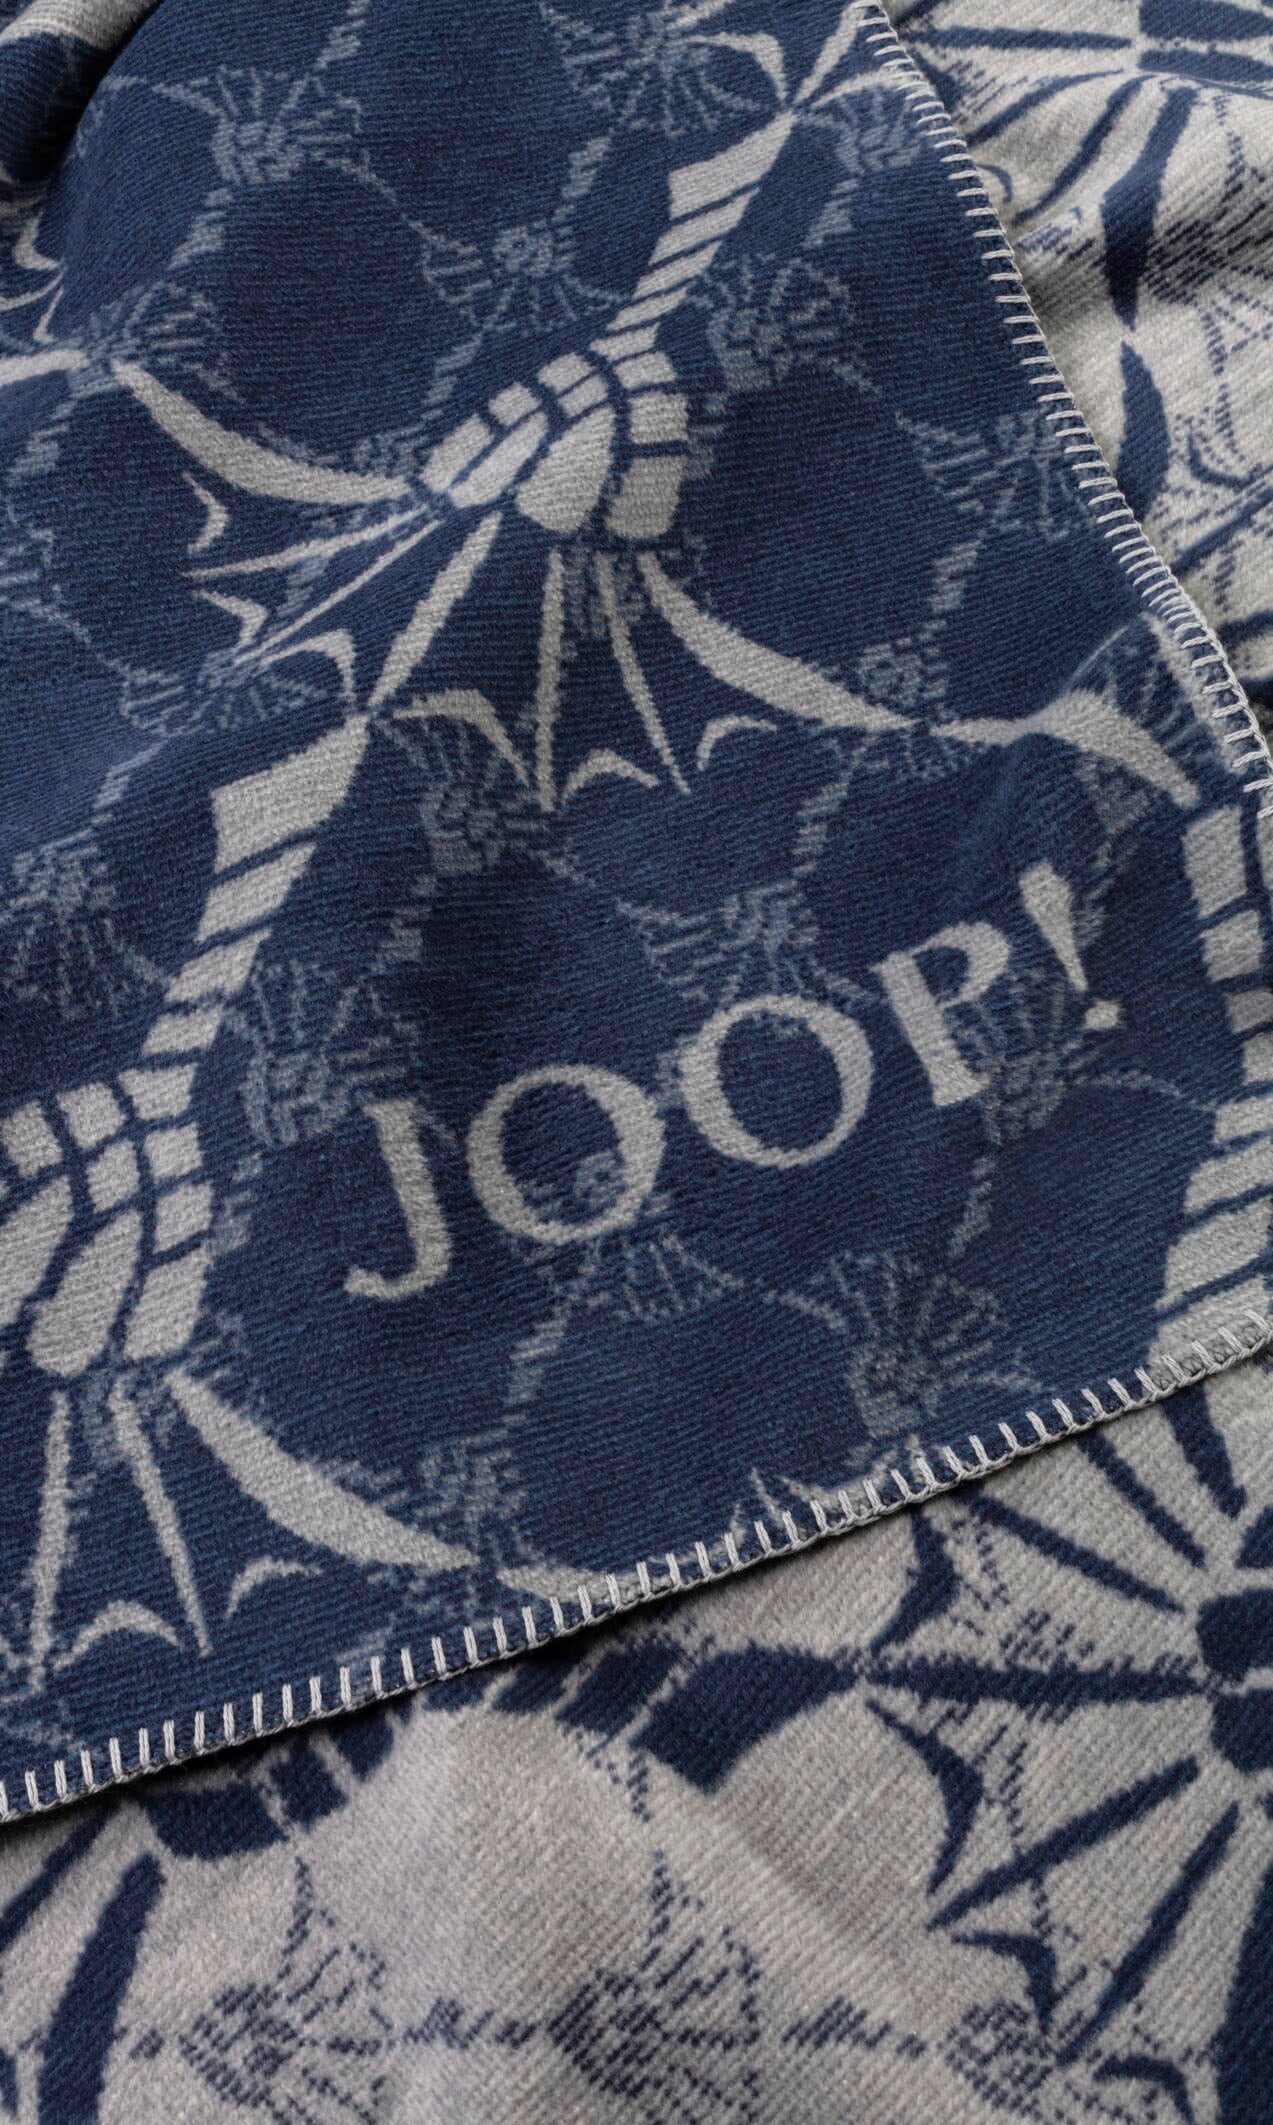 Shop OTTO »JOOP! im Online DOUBLE« Joop! CORNFLOWER Wohndecke